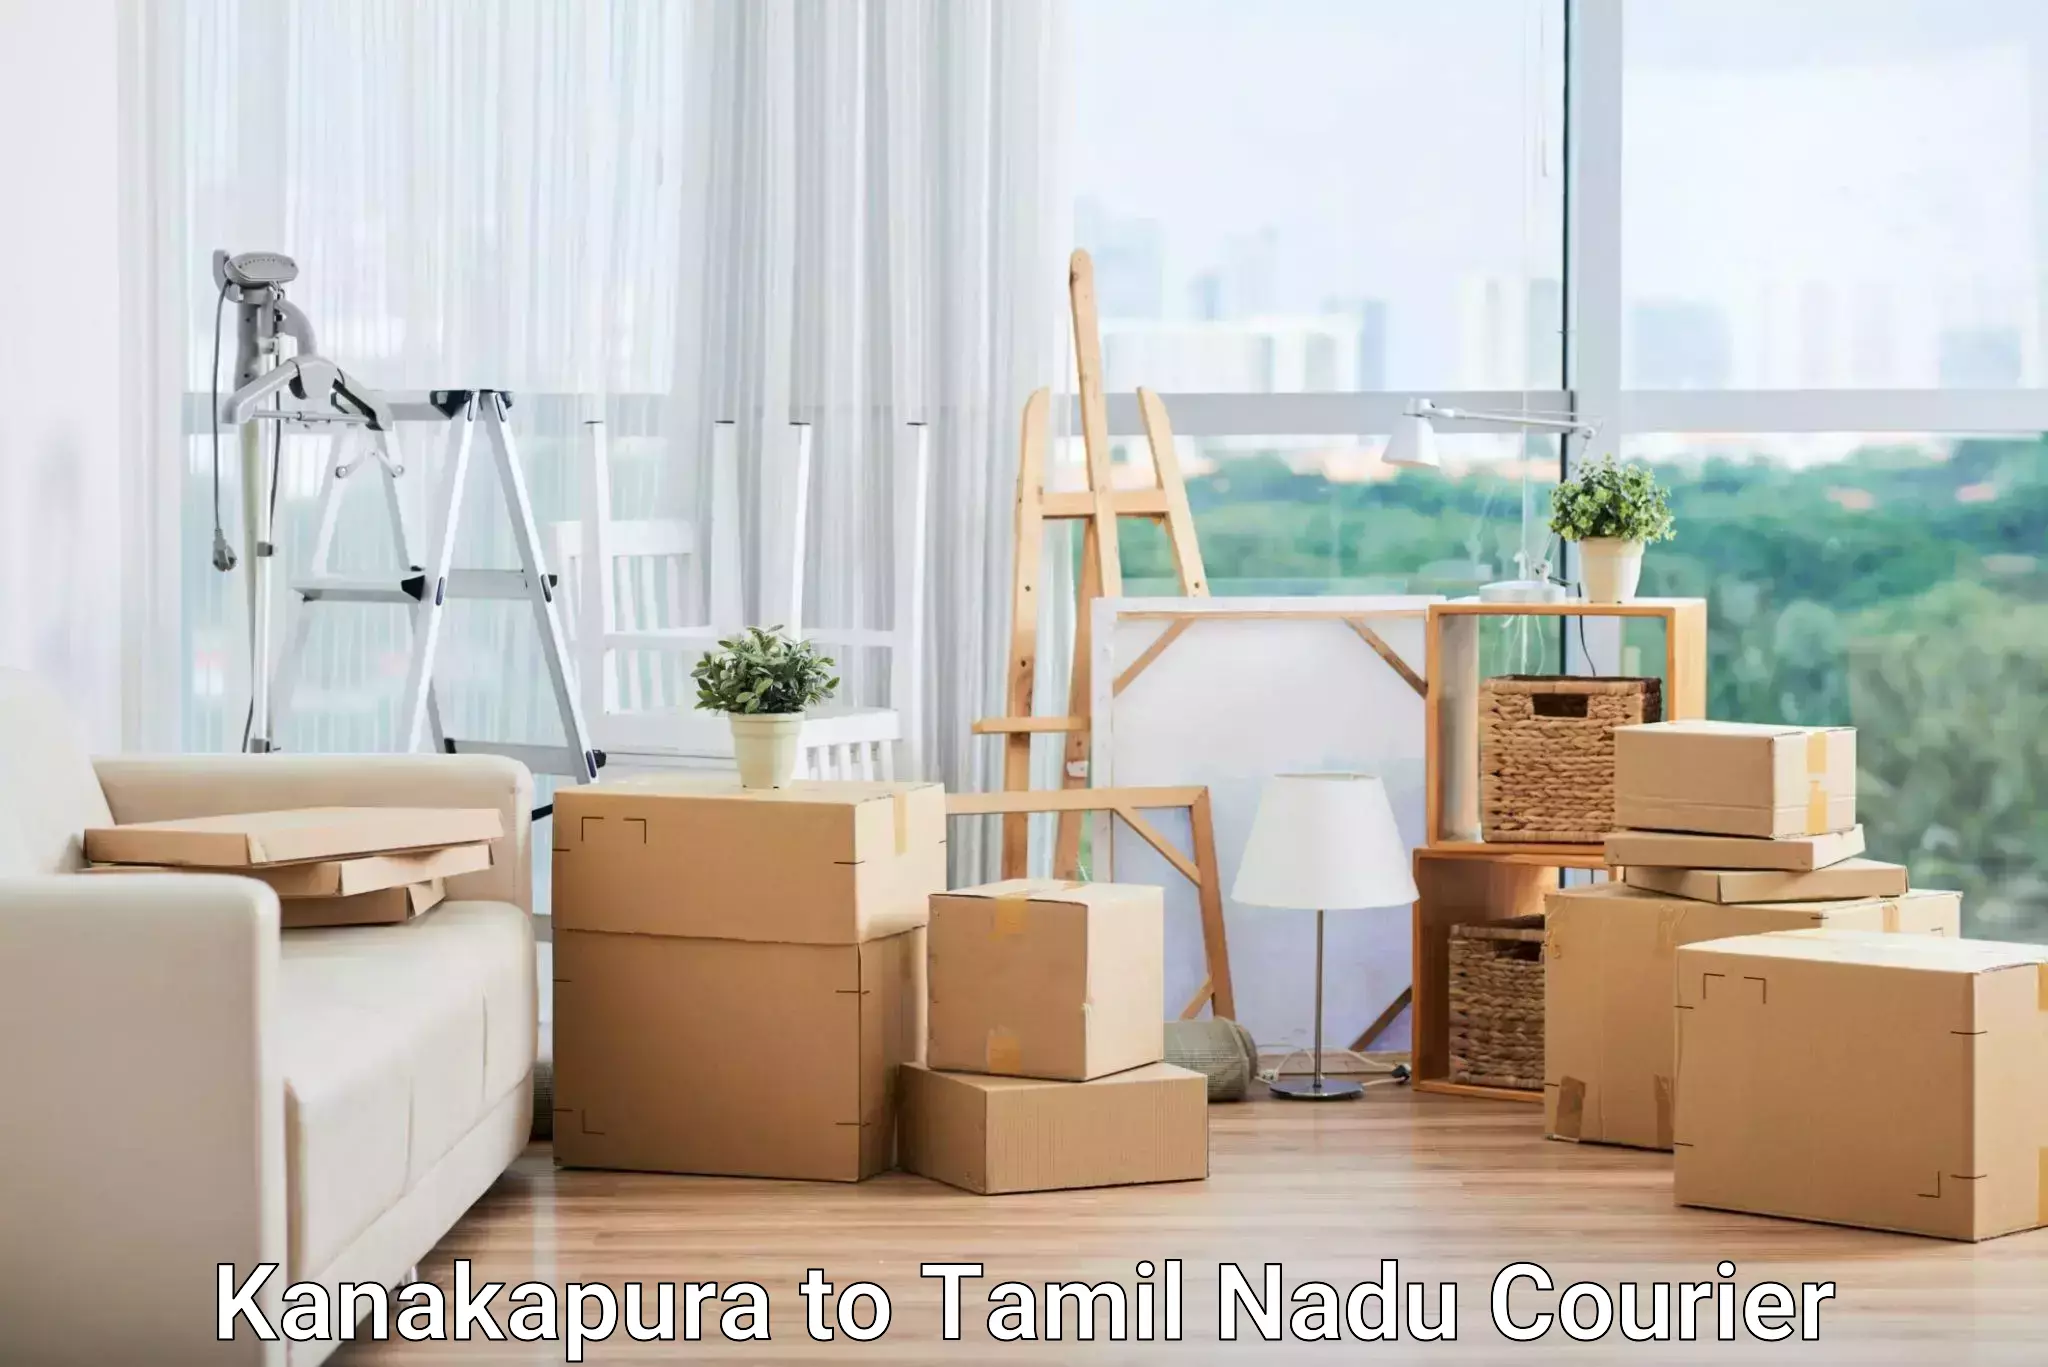 Enhanced delivery experience Kanakapura to Palacode